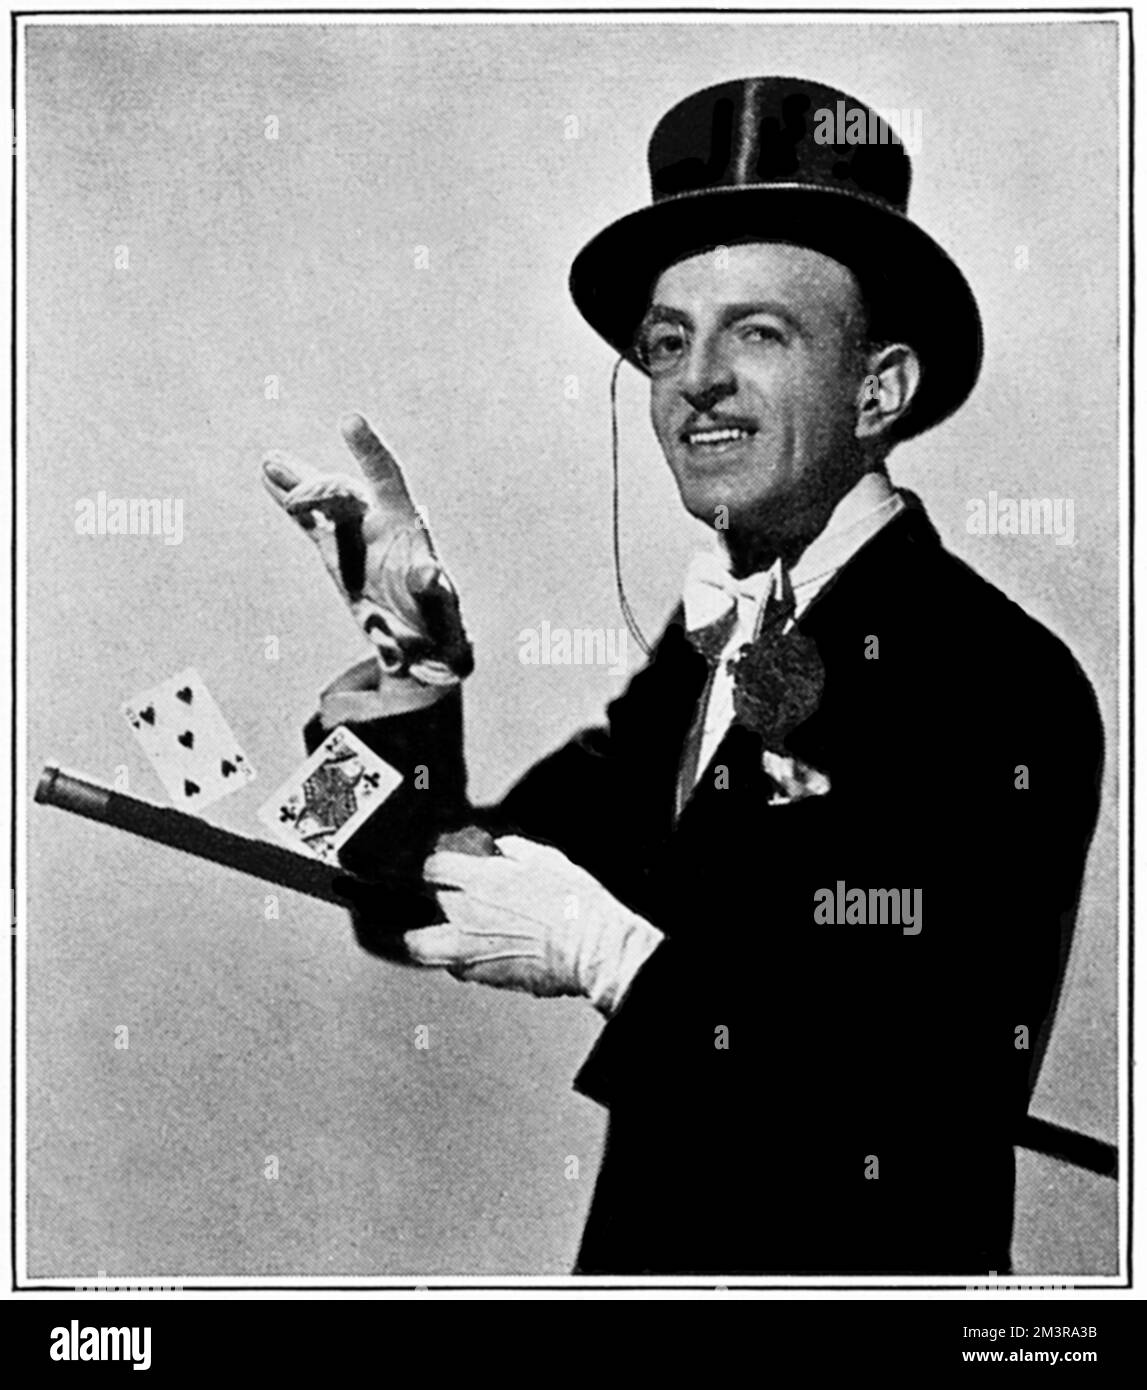 Cardini - Magicien (Richard Valentine Pitchford) (1895-1973). Né et élevé en Grande-Bretagne (et ayant servi dans l'armée britannique en WW1), il a travaillé principalement aux États-Unis d'Amérique, atteignant la renommée combinant la magie avec une performance très divertissante sur scène, établissant le modèle pour de nombreux magiciens et conjurés dans les décennies suivantes. Date: 1937 Banque D'Images